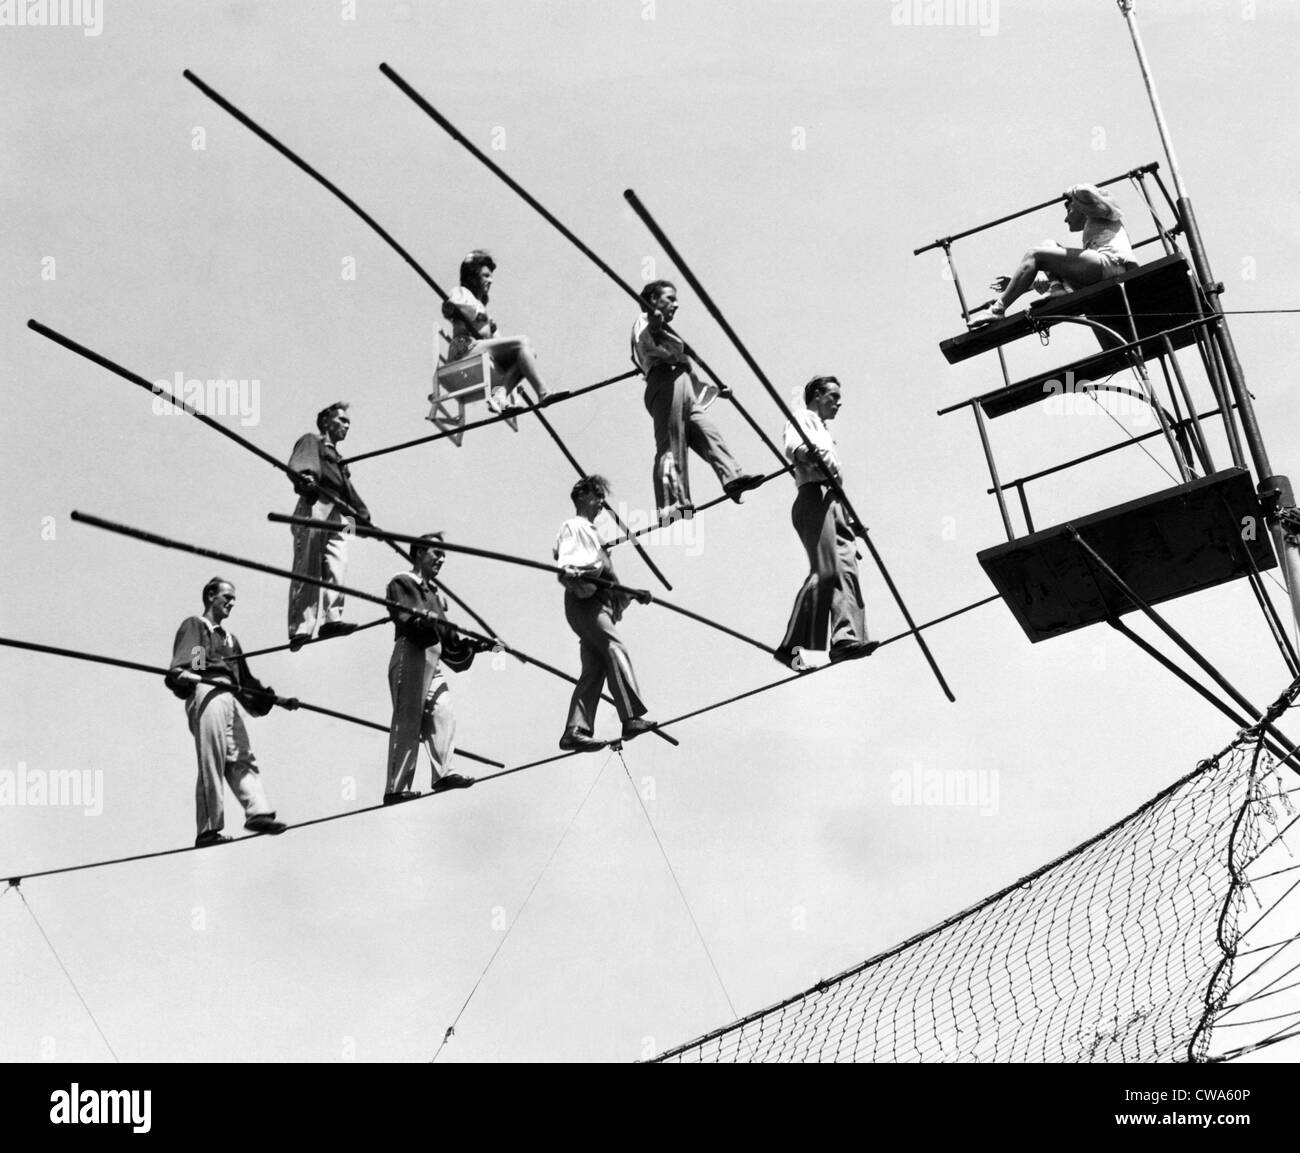 Il Flying Wallendas, una legge del circus noto per eseguire acrobazie senza reti di sicurezza, praticando il loro agire, 1947.. La cortesia: CSU Foto Stock